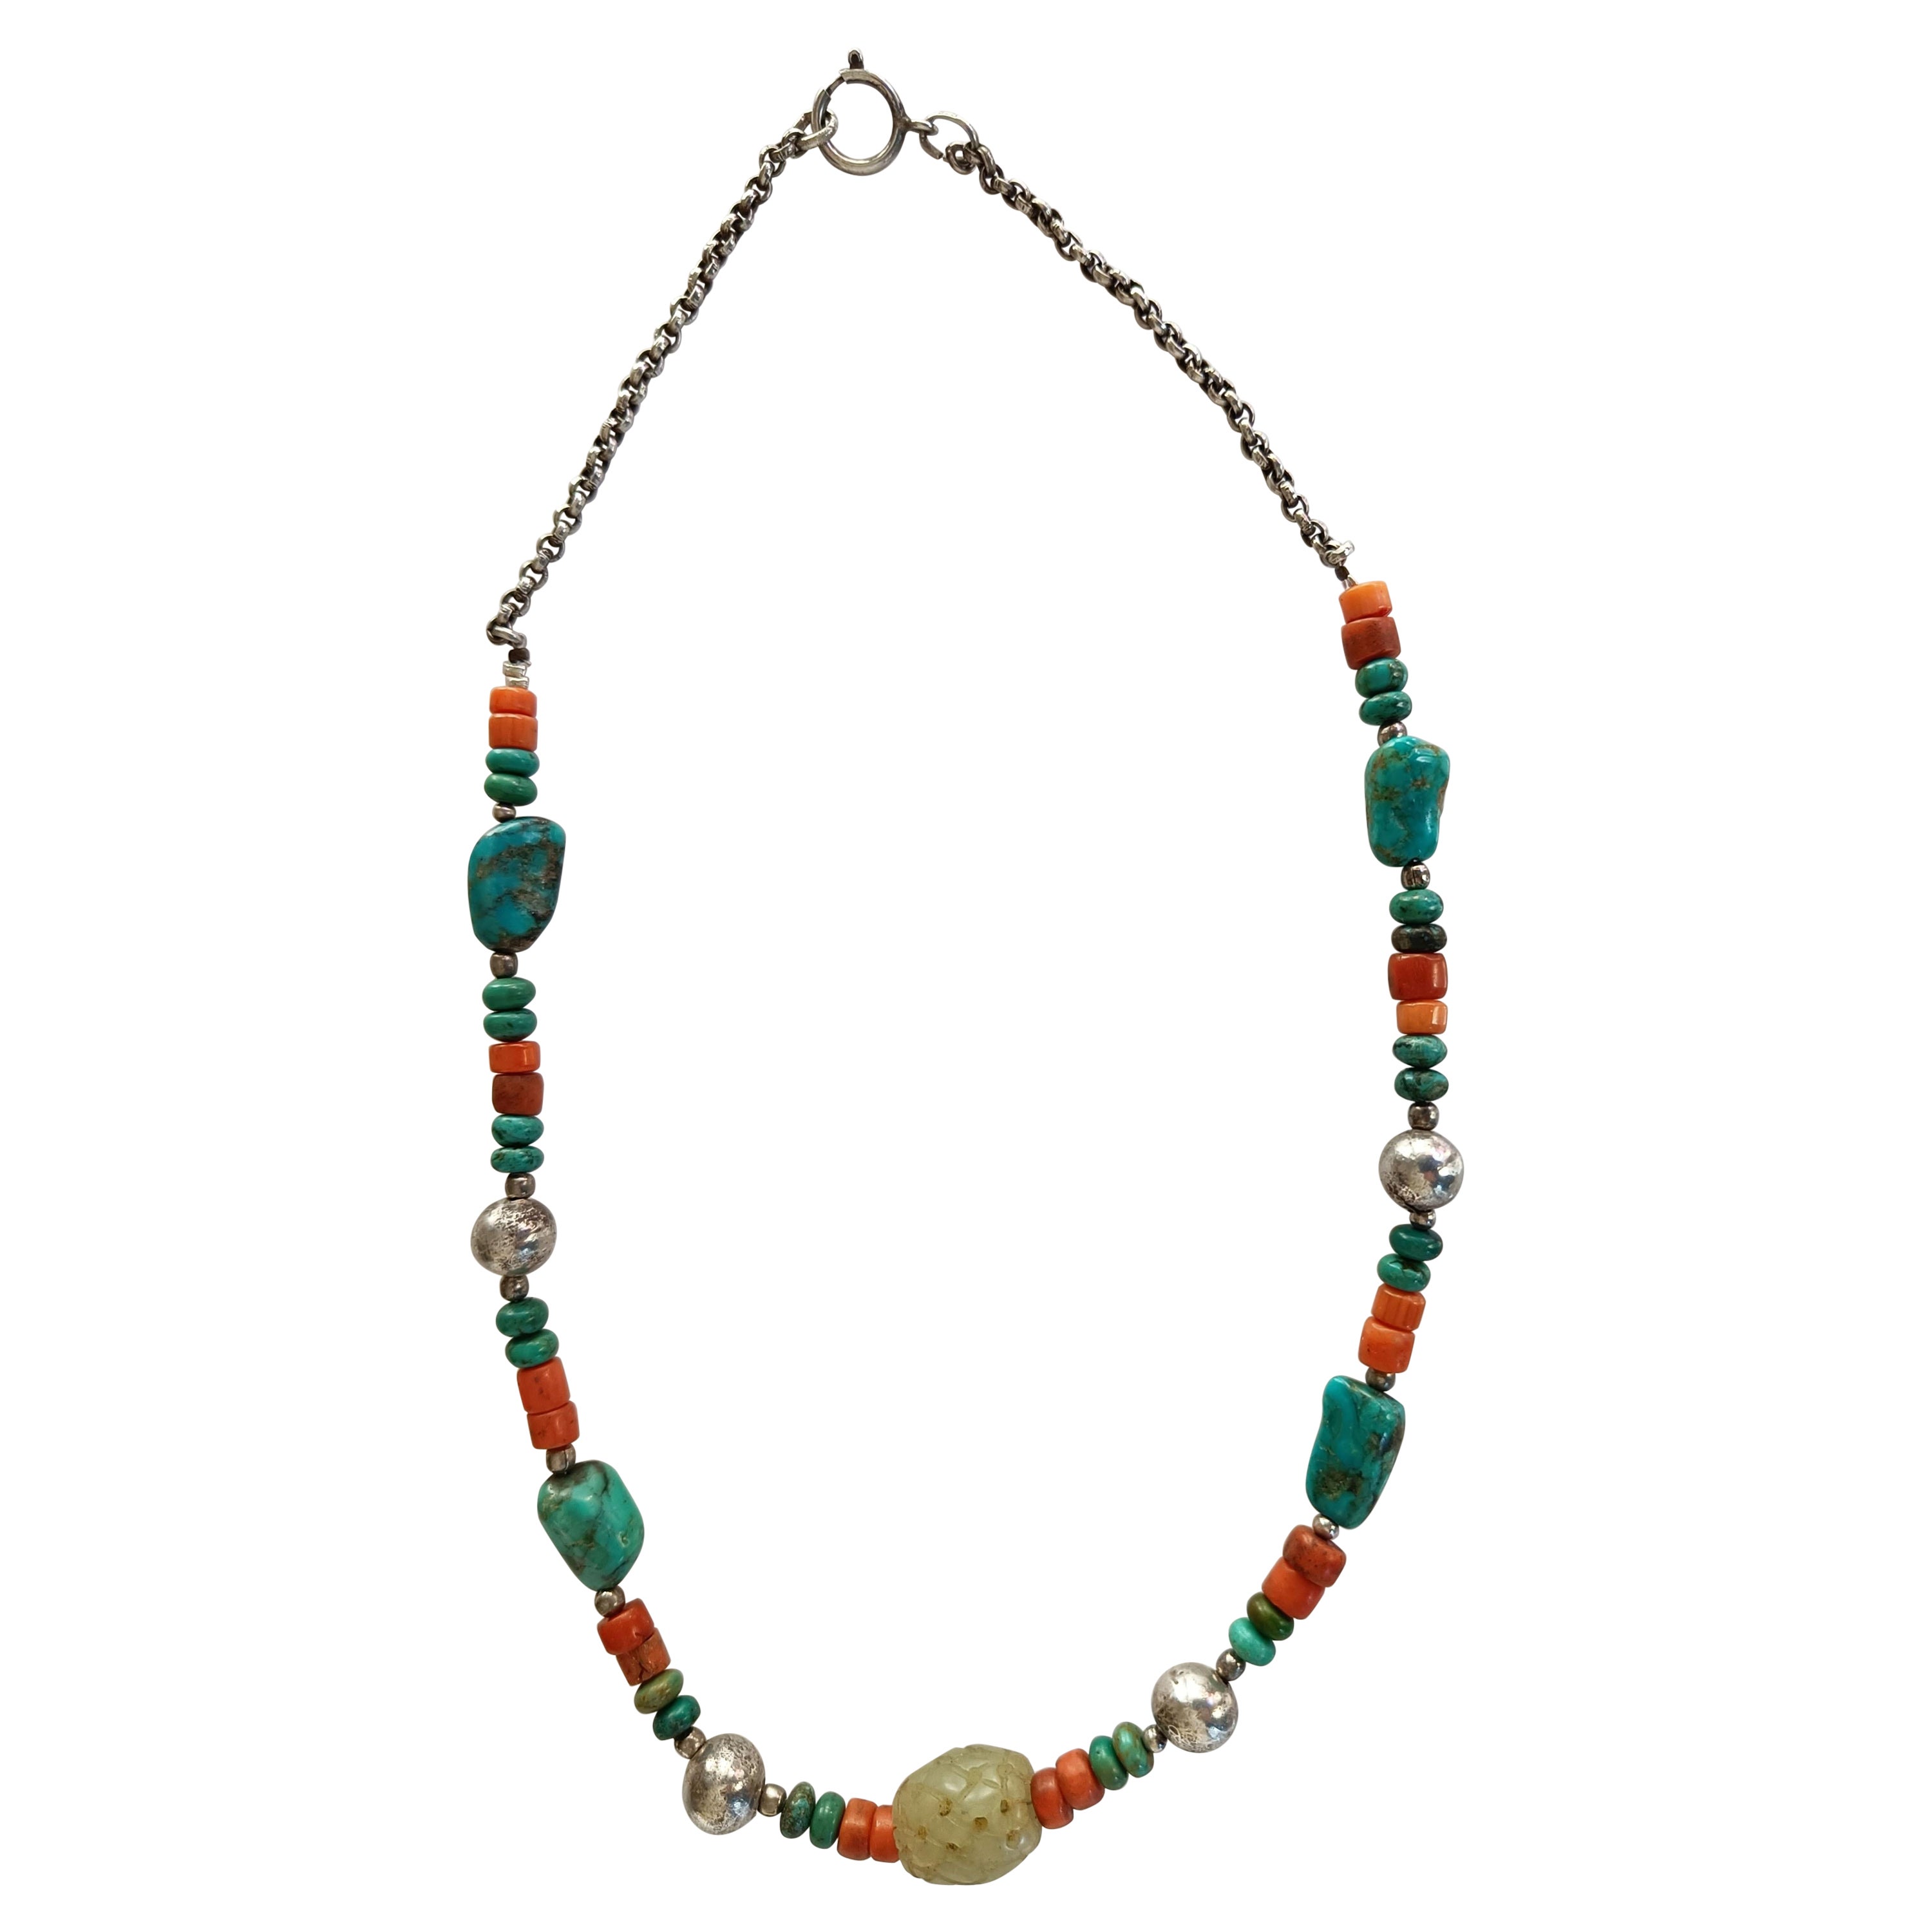 Collier chinois ethnique ancien en argent, turquoise, jade, corail et bijoux tribaux